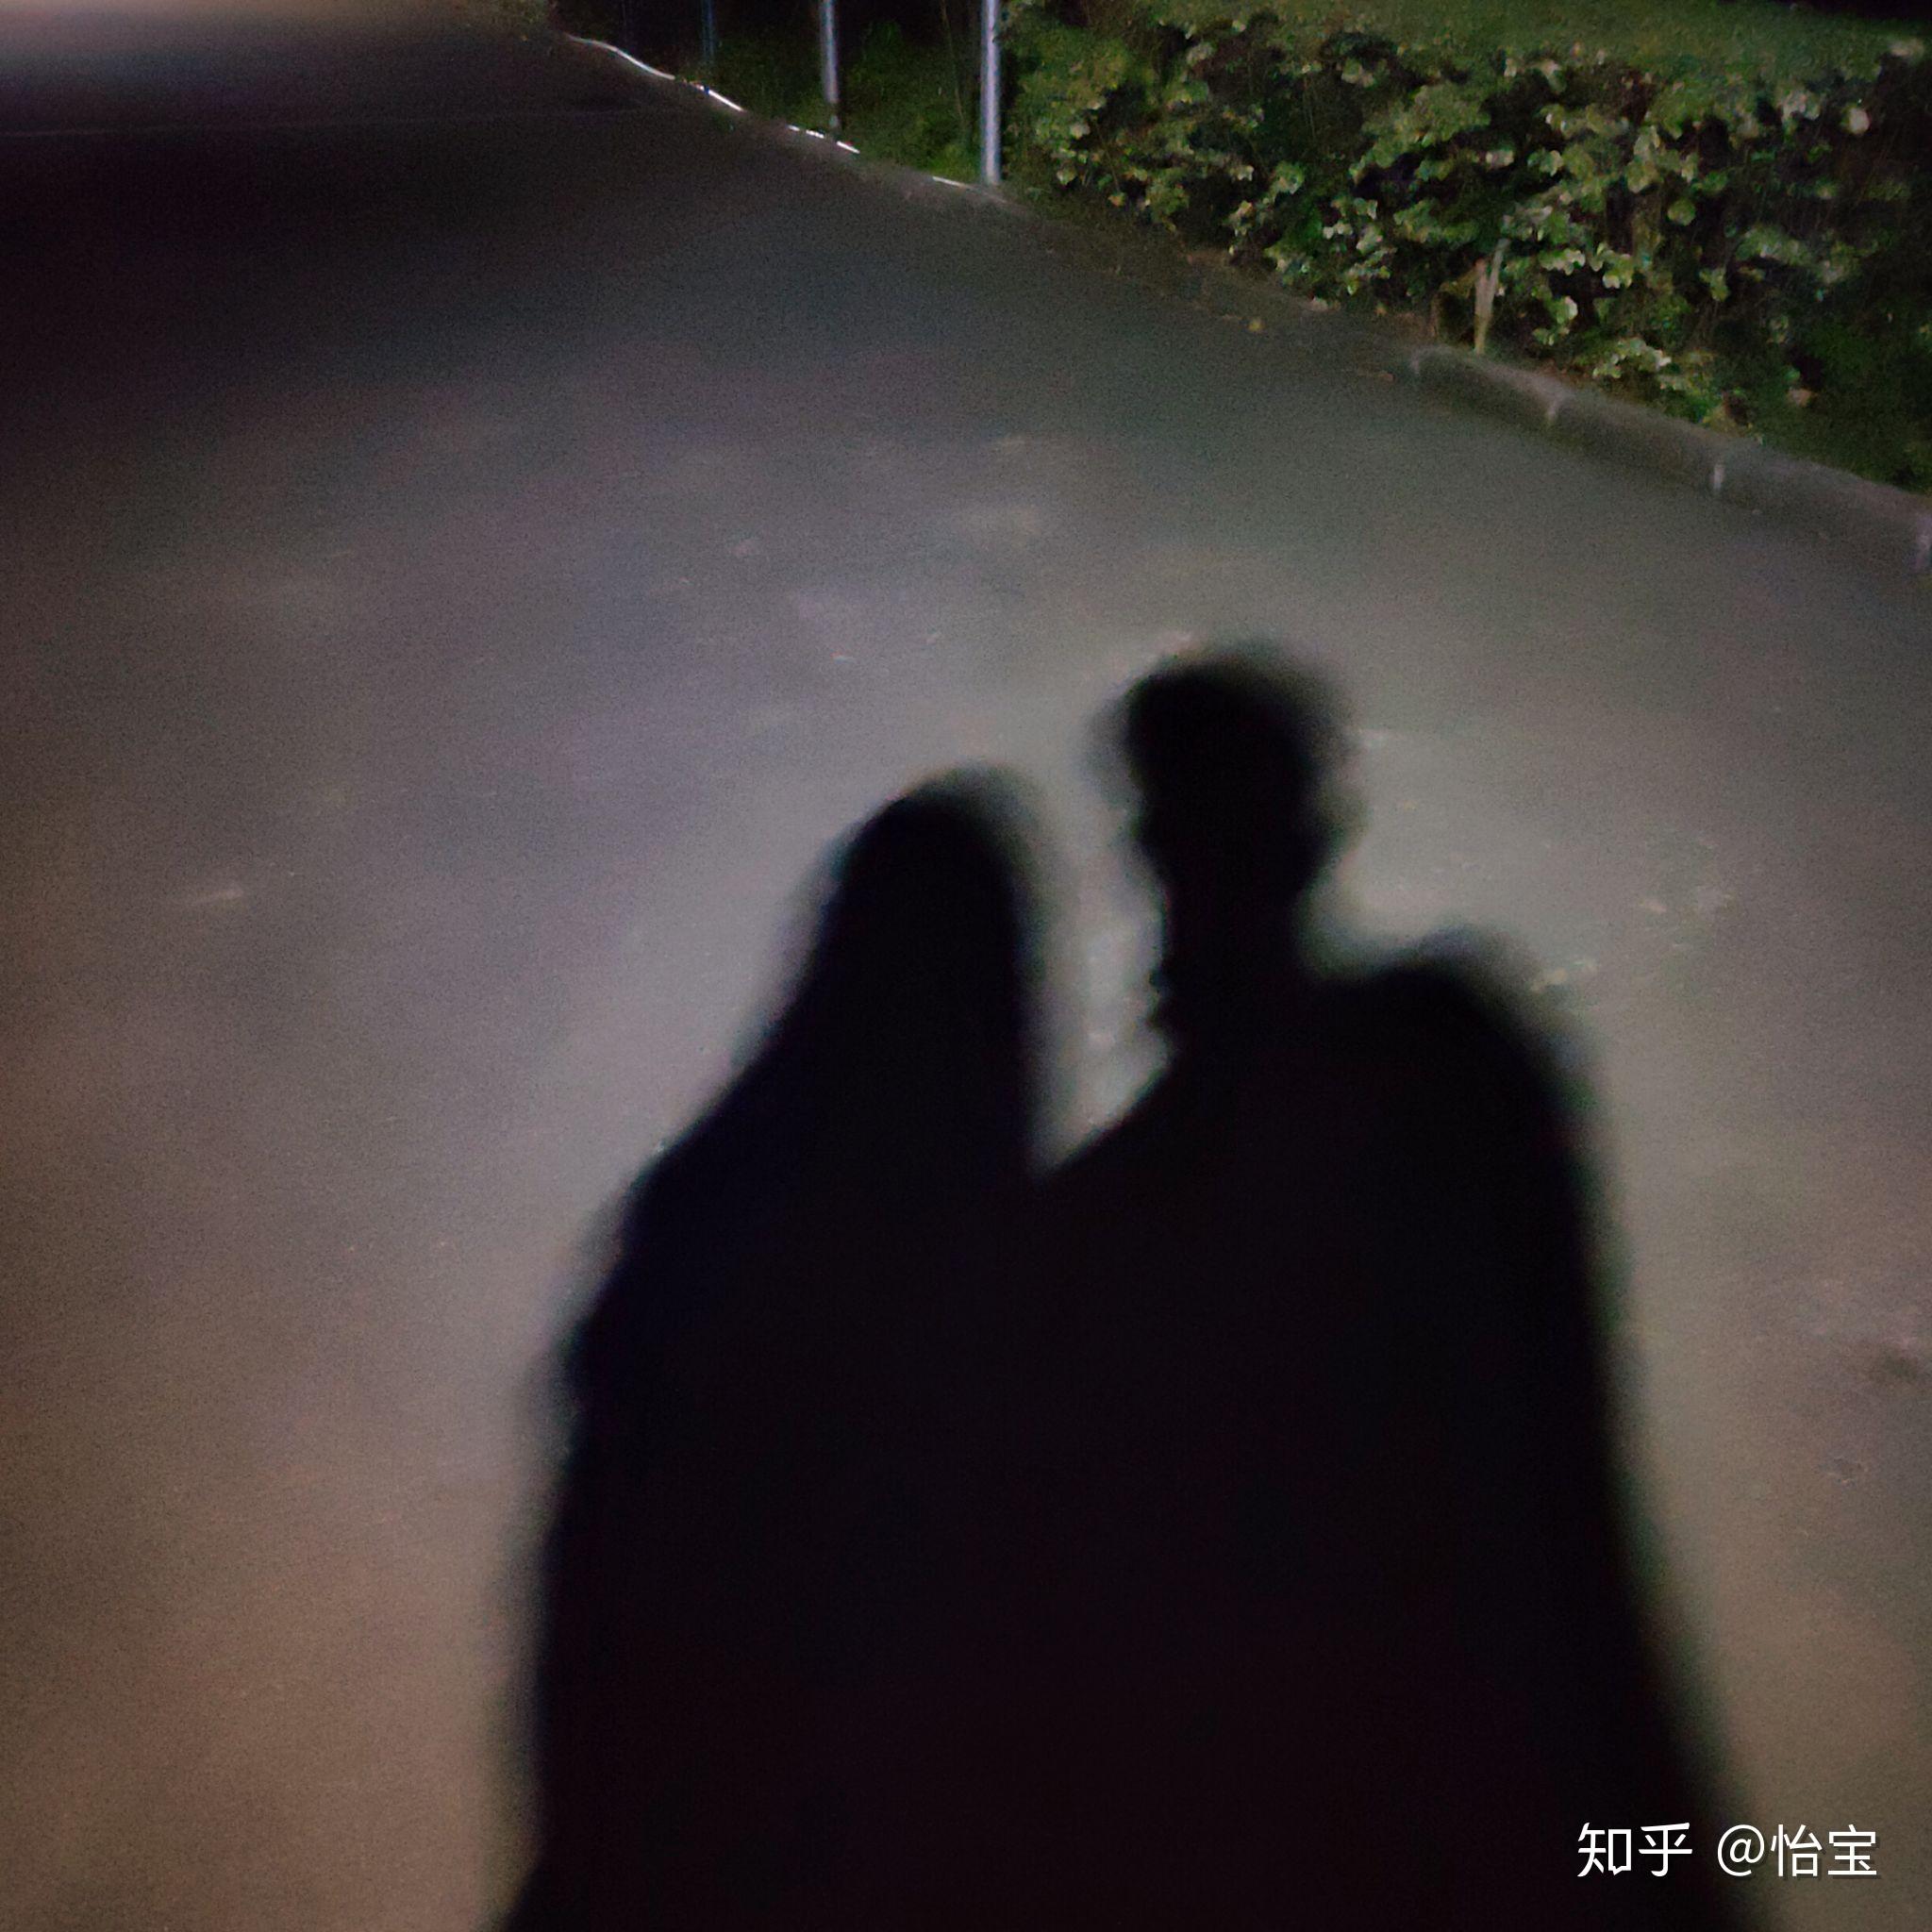 情侣深夜影子照 真实图片